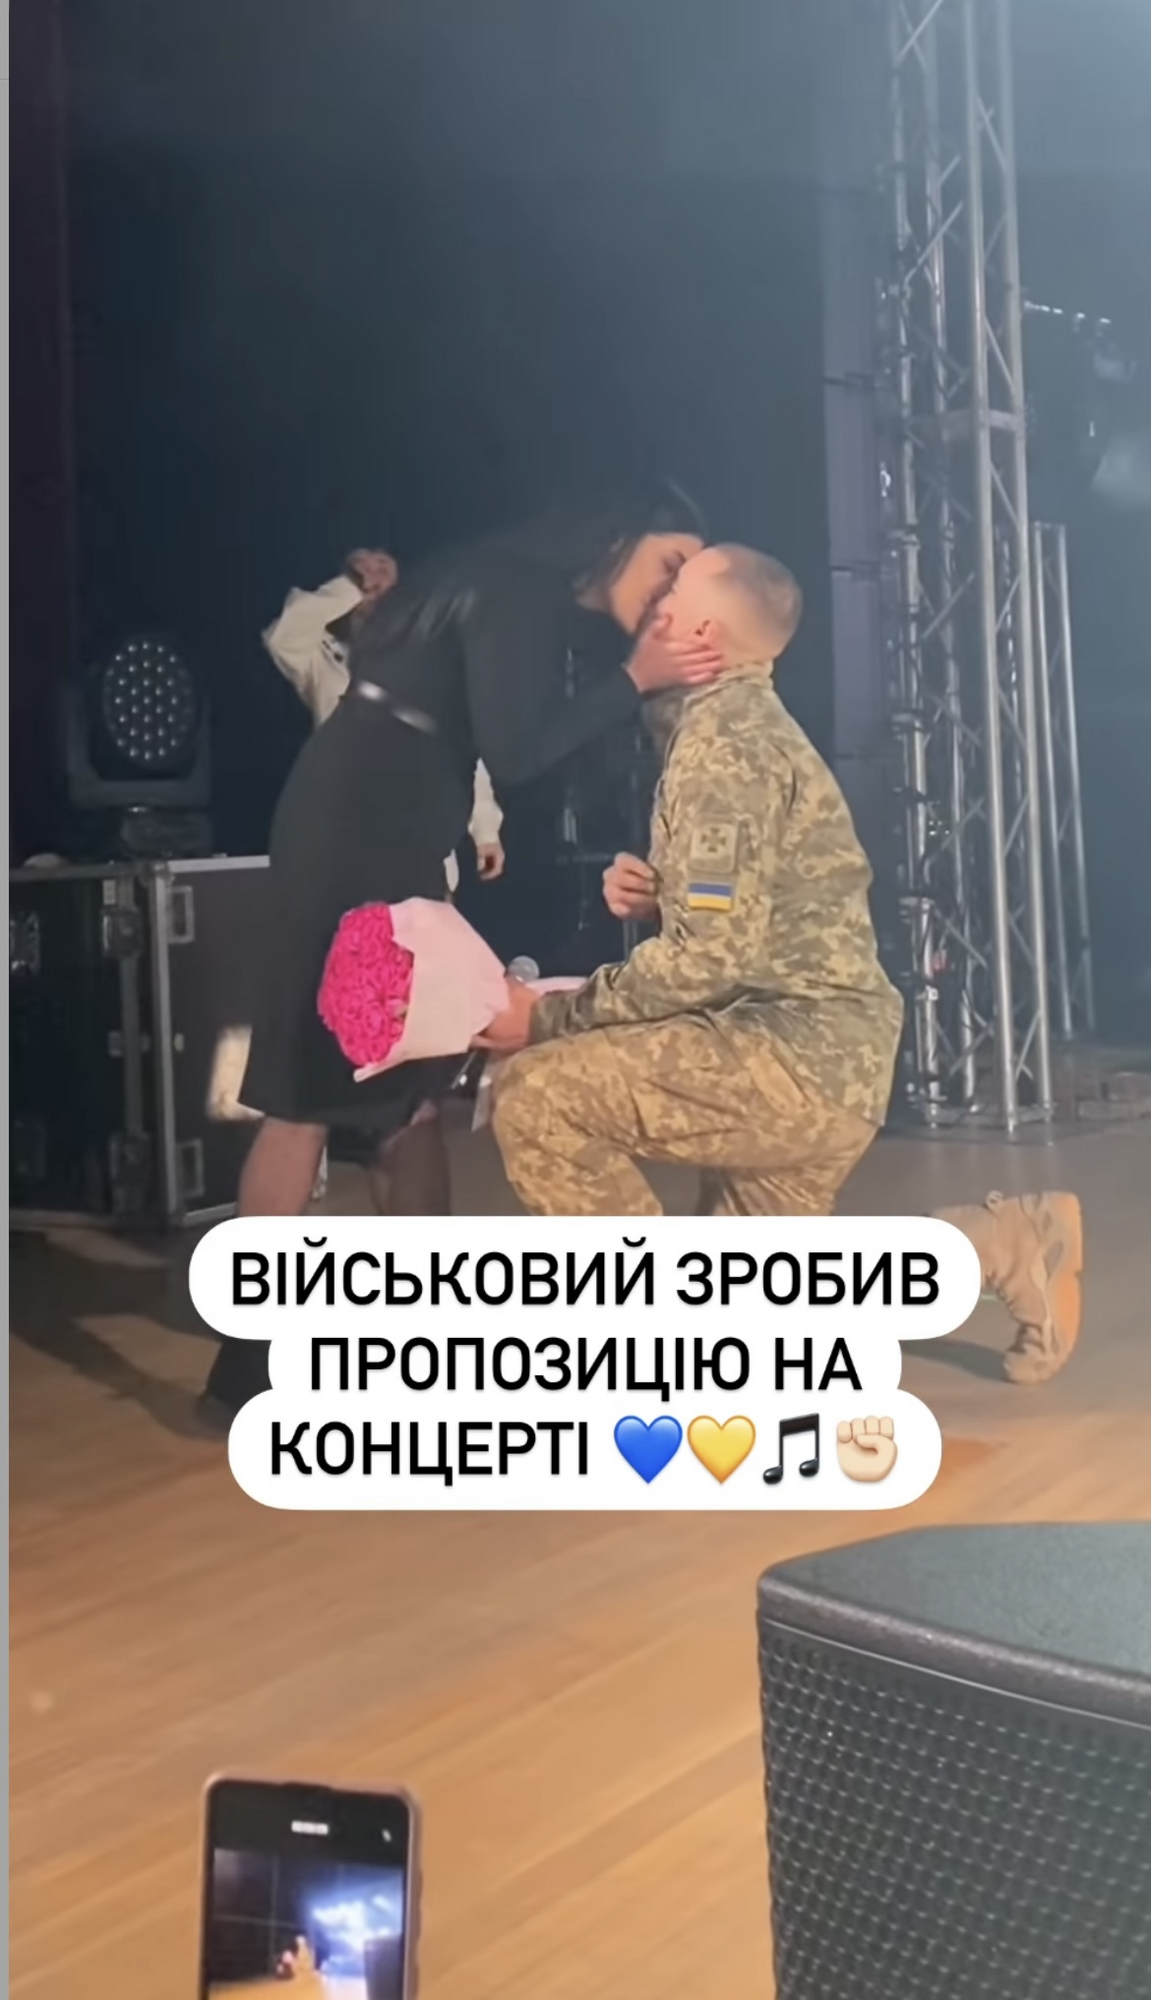 На концерті Артема Пивоварова військовий зробив пропозицію своїй коханій. Зворушливе відео